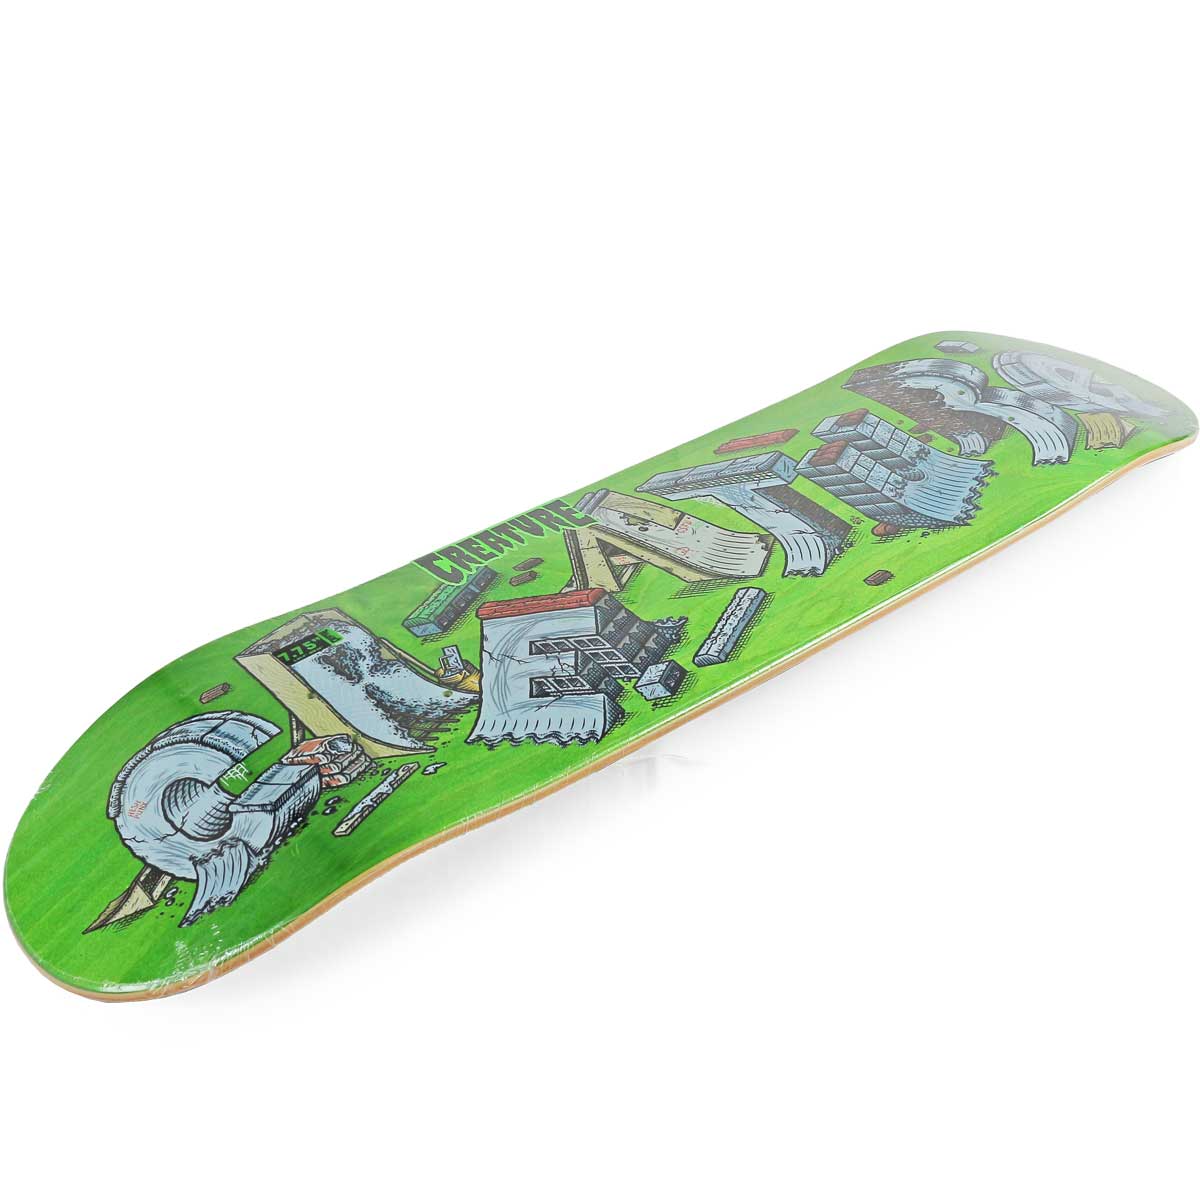 クリーチャー 7.75インチ スケボー デッキ Creature Skateboards Slab